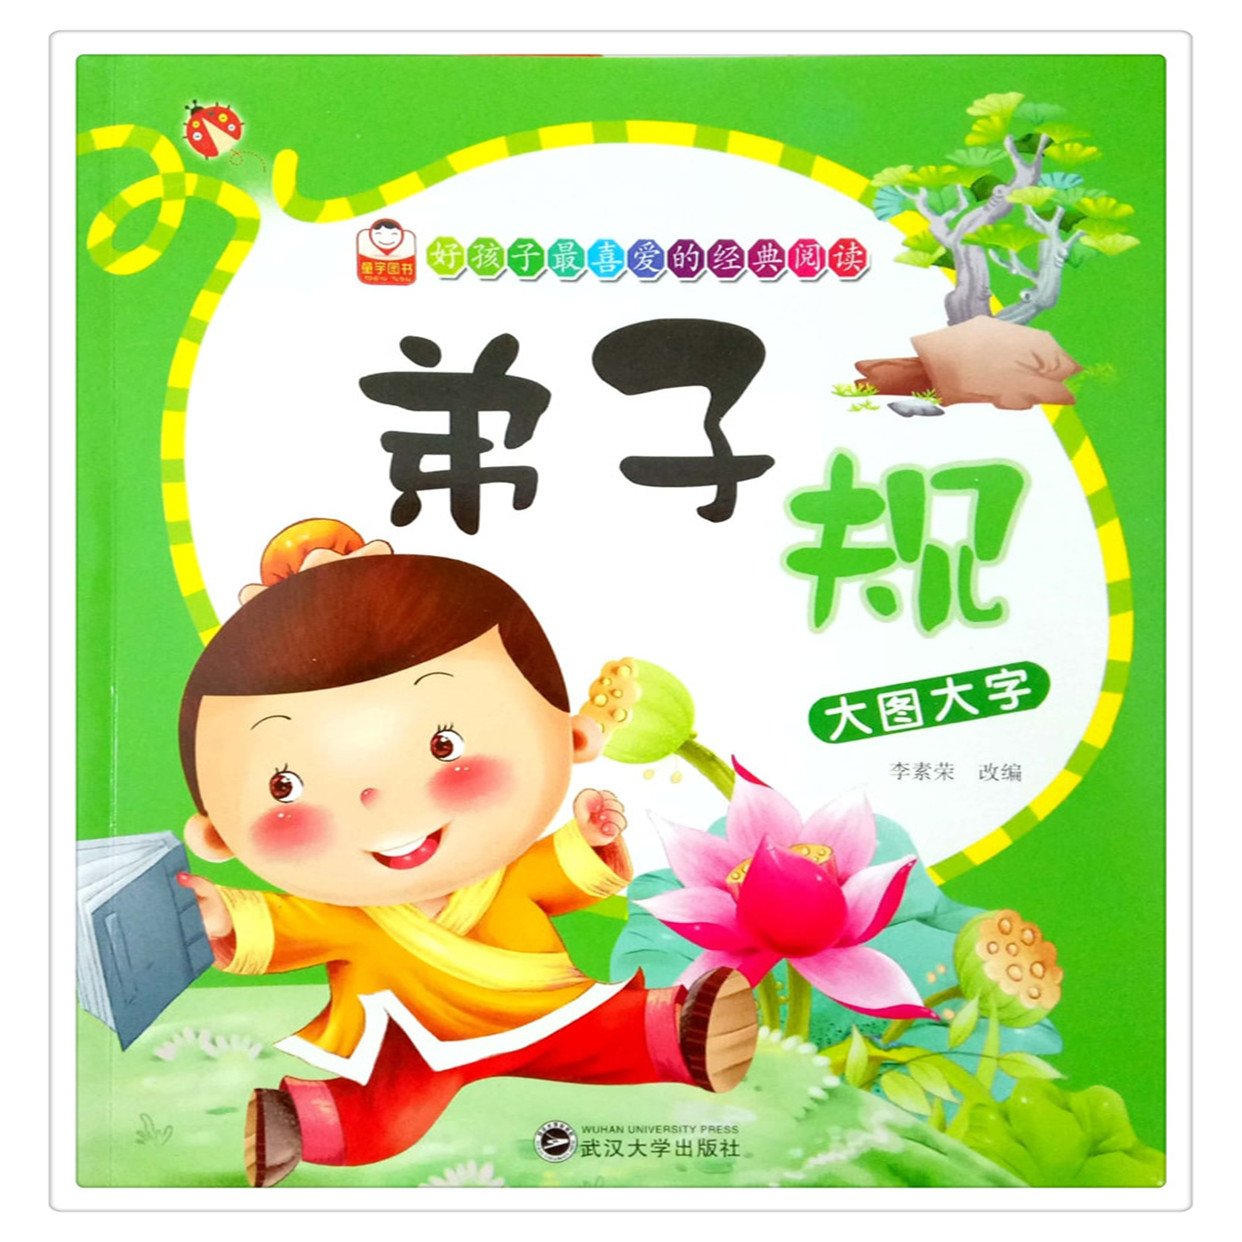 童宇图书 弟子规 大图大字 好孩子喜爱的经典阅读 武汉大学出版社